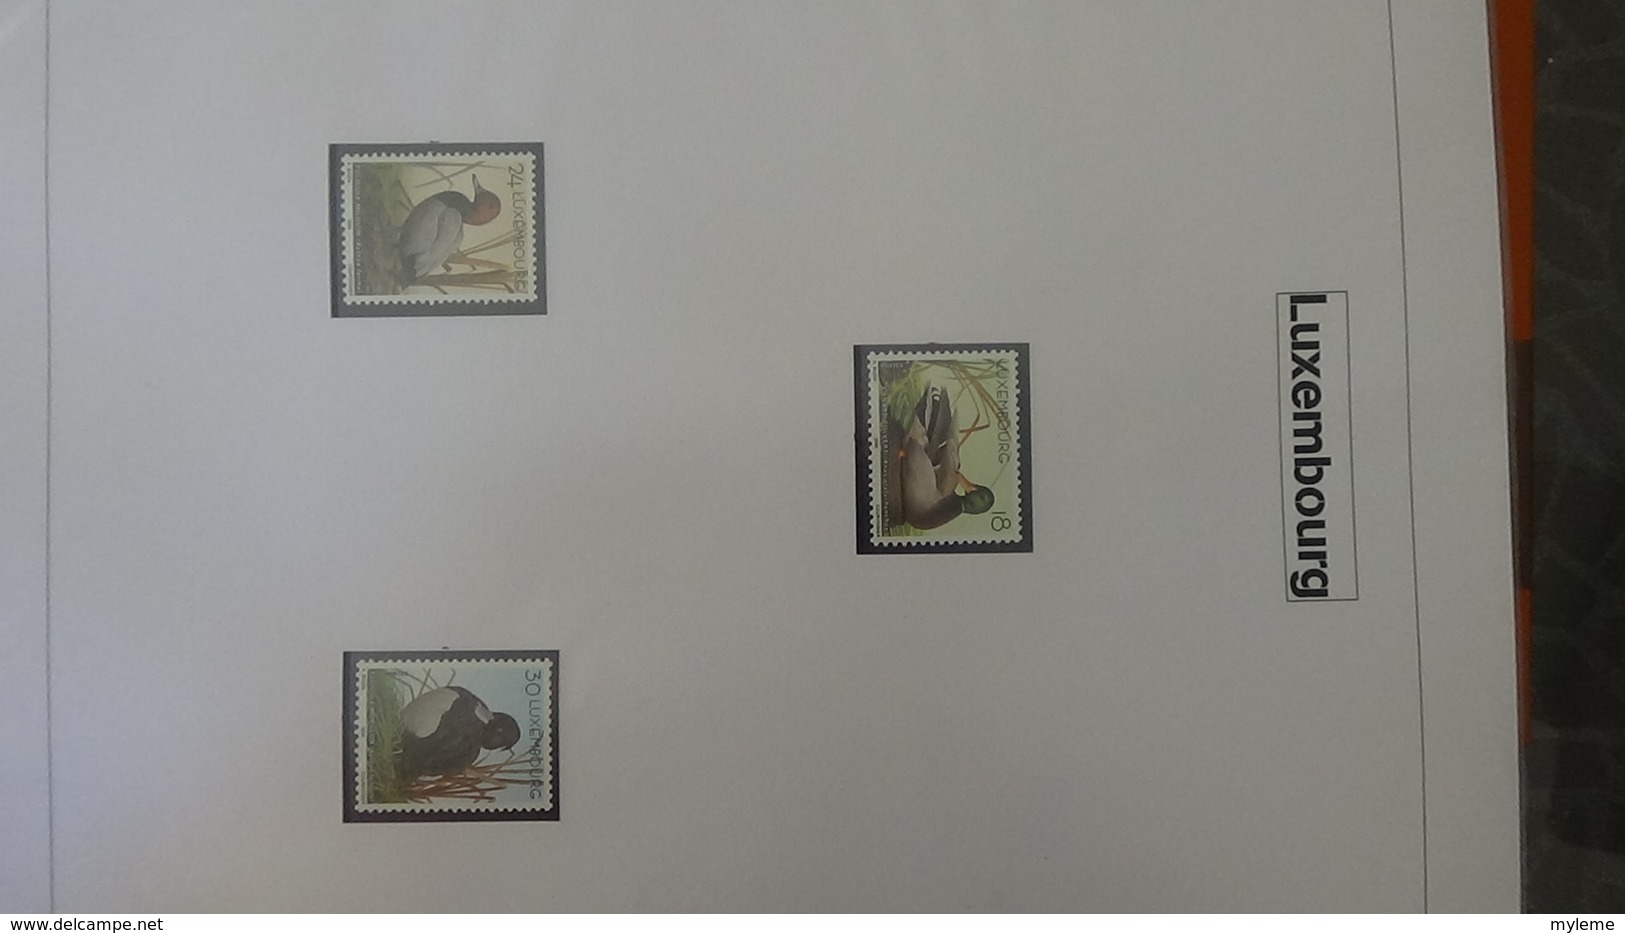 Belle étude sur les oiseaux par l'artiste André BUZIN. Super travail en timbres et blocs ** A saisir !!!